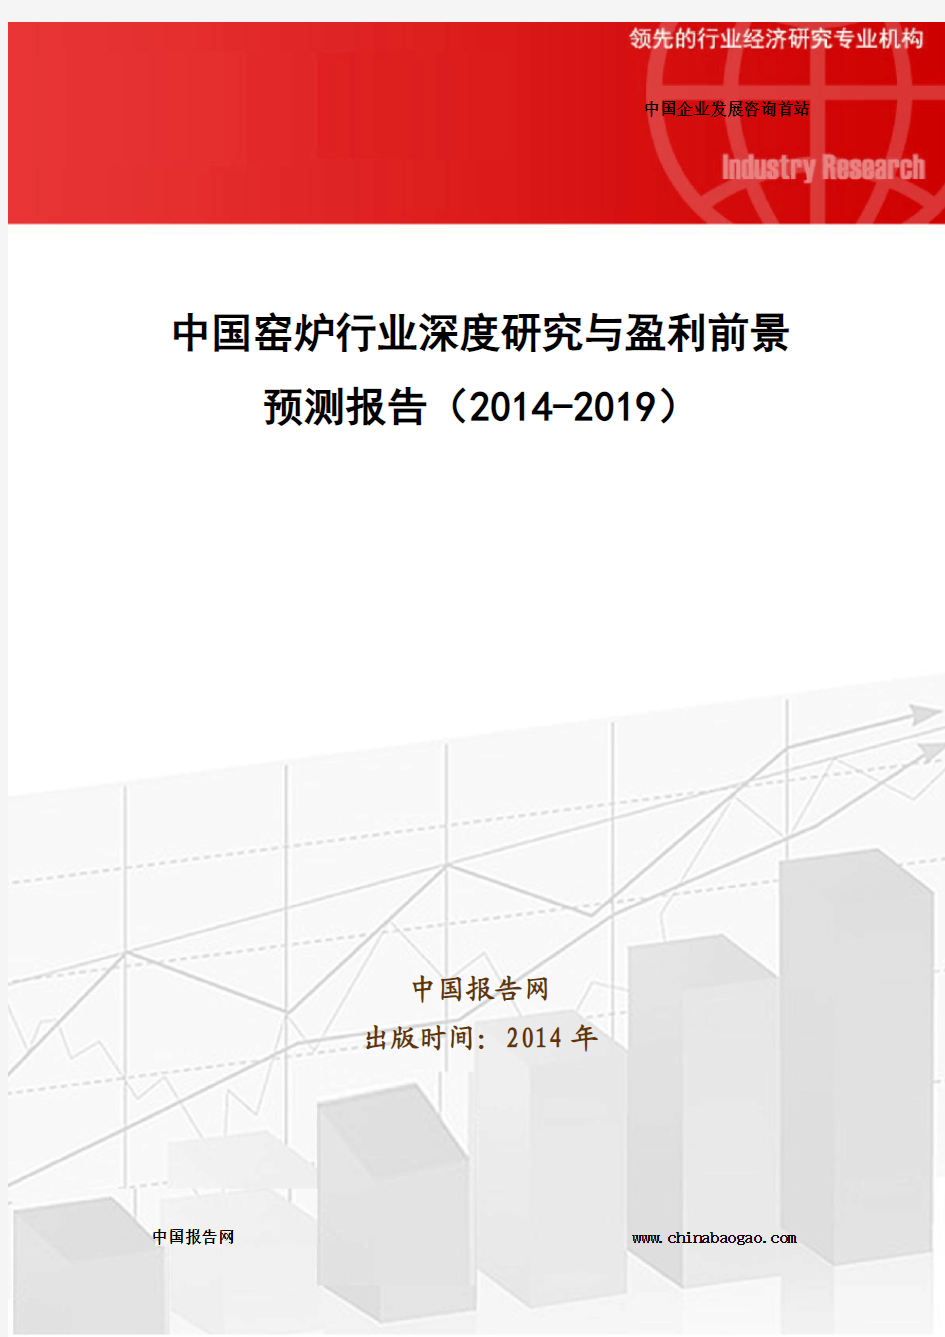 中国窑炉行业深度研究与盈利前景预测报告(2014-2019)